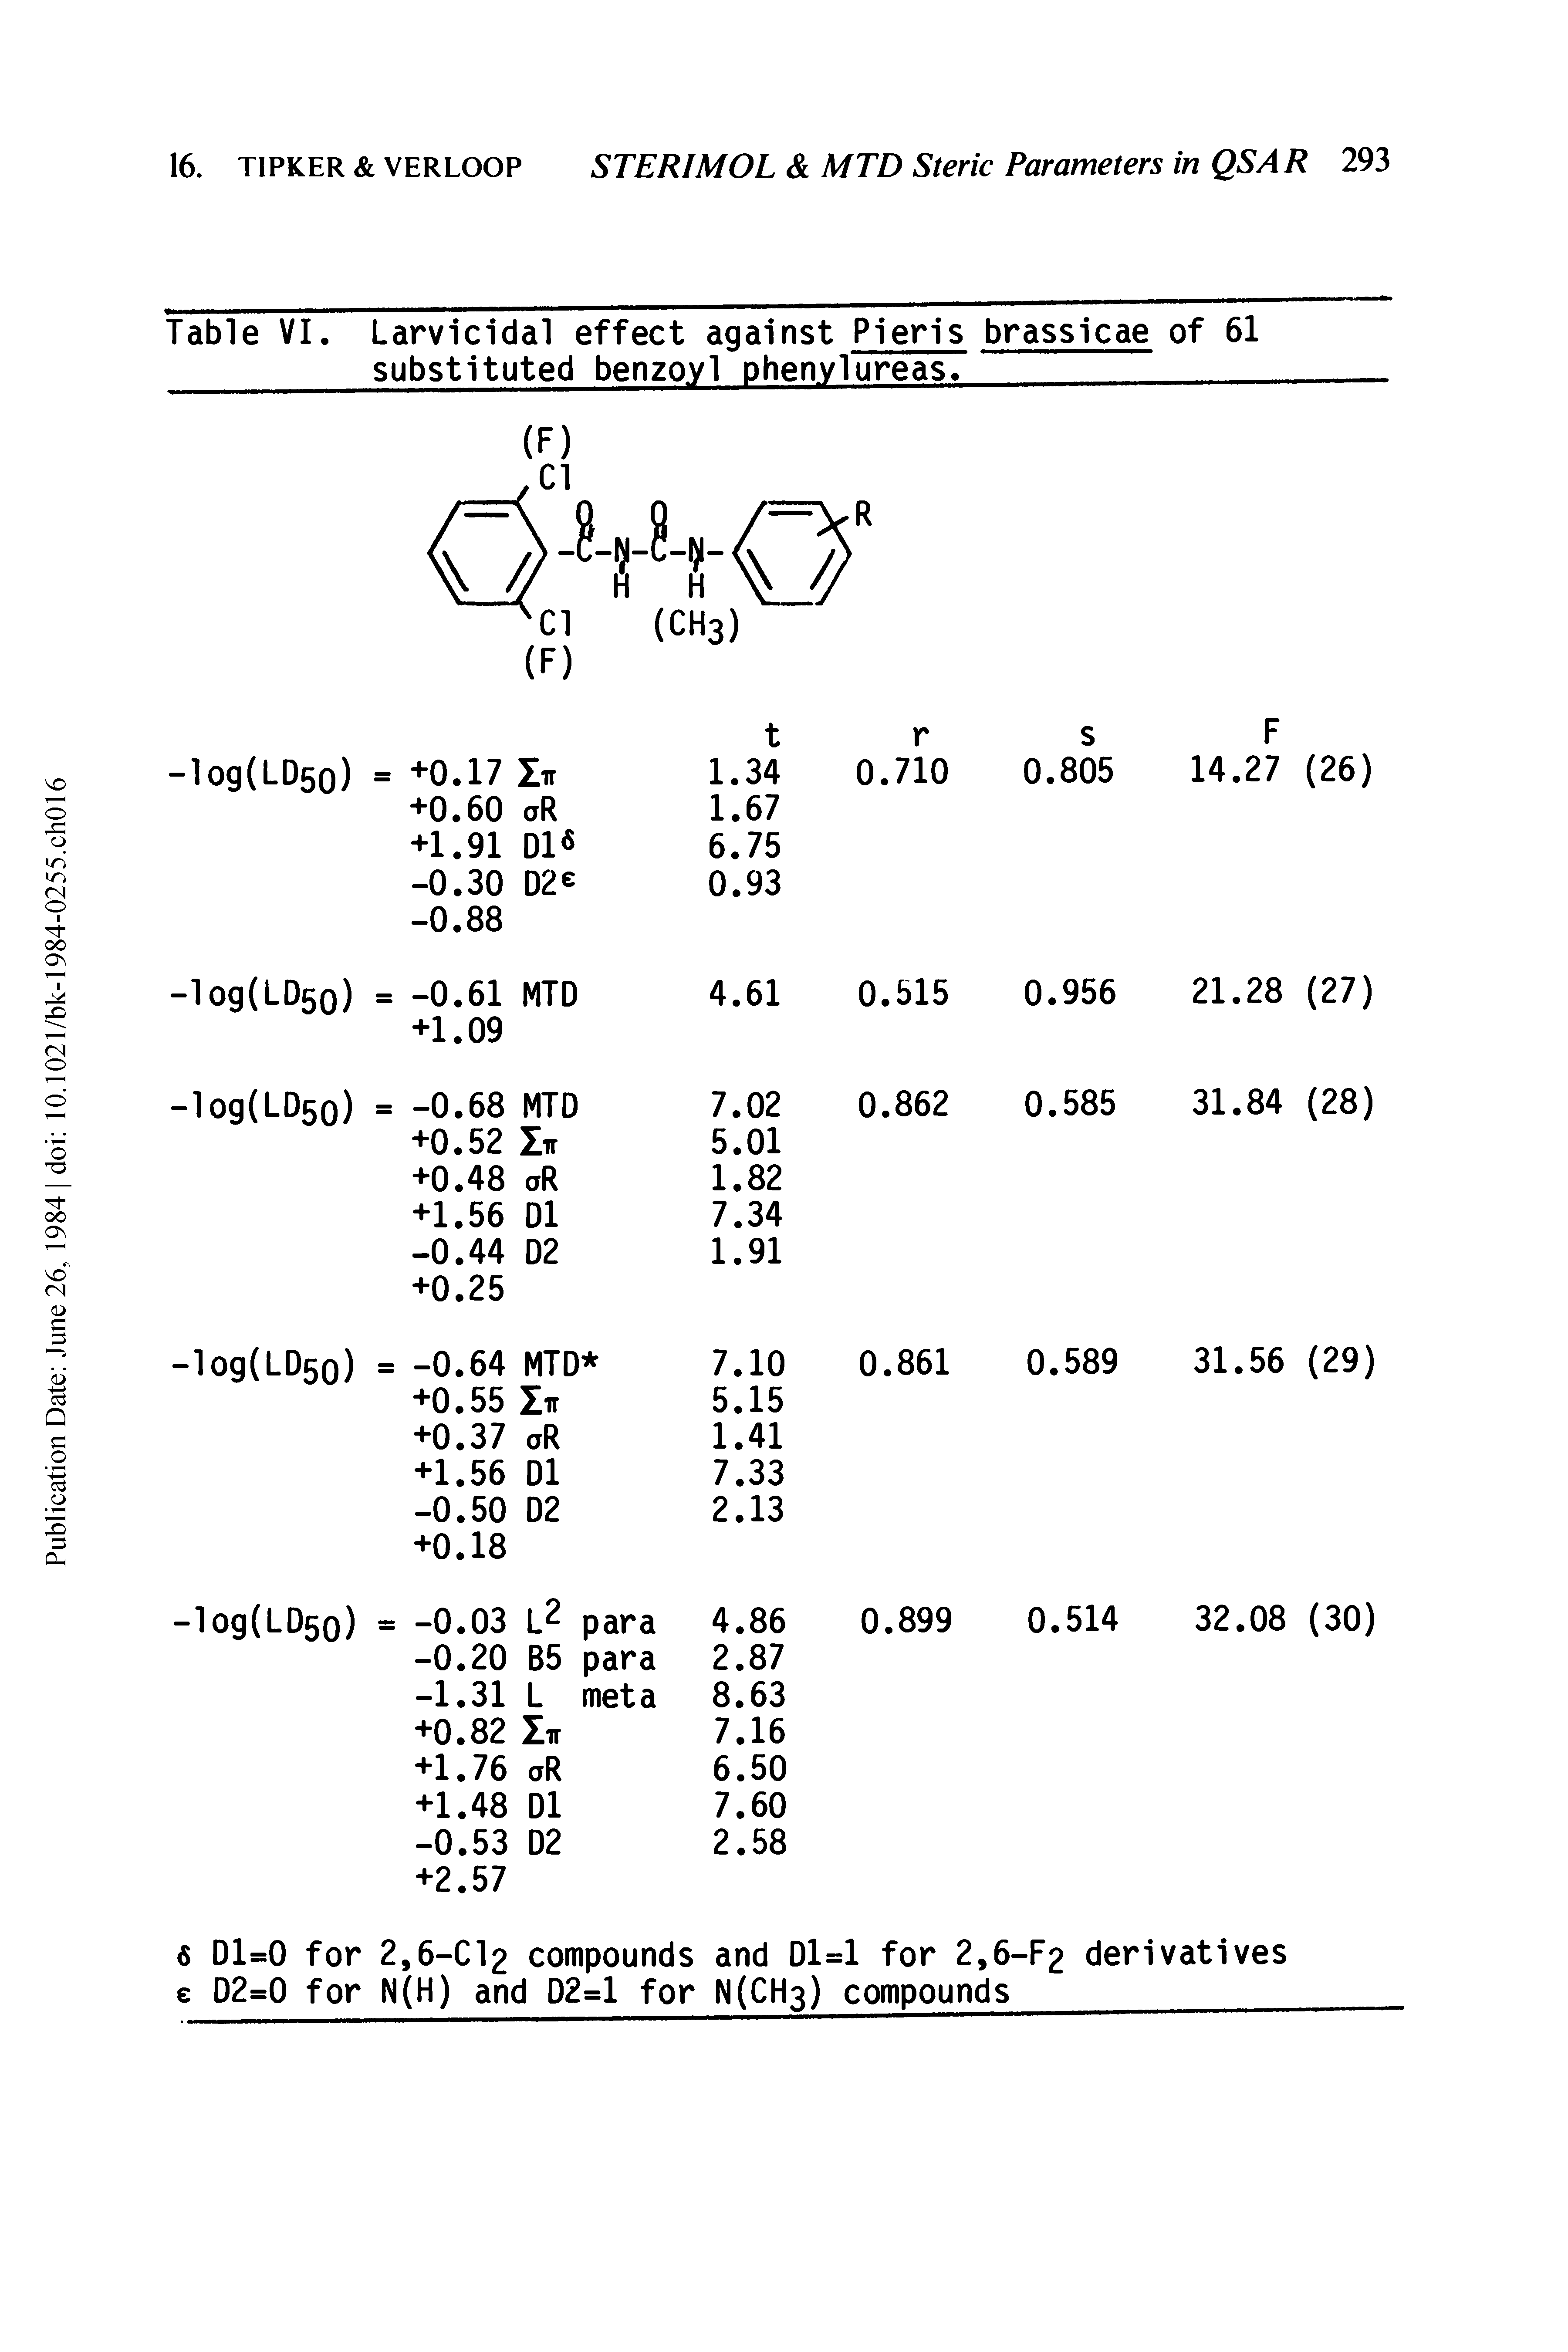 Table VI. Larvicidal effect against Pieris brassicae of 61 substituted benzoyl phenvlureas. ...